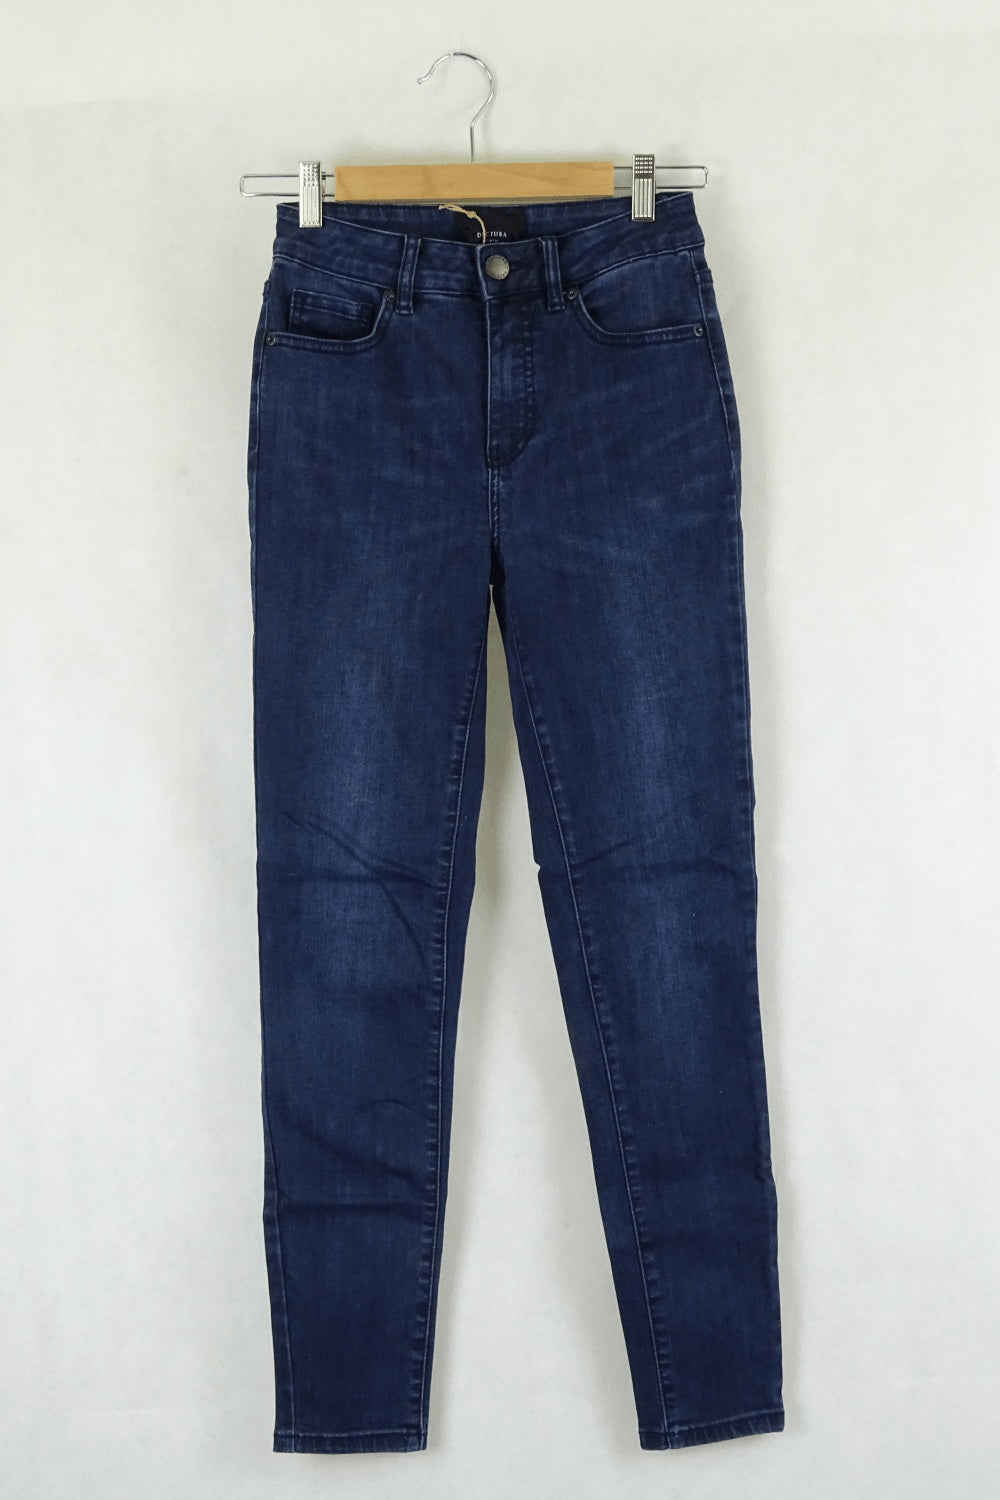 Decjuba Blue High Waisted Skinny Jeans 8